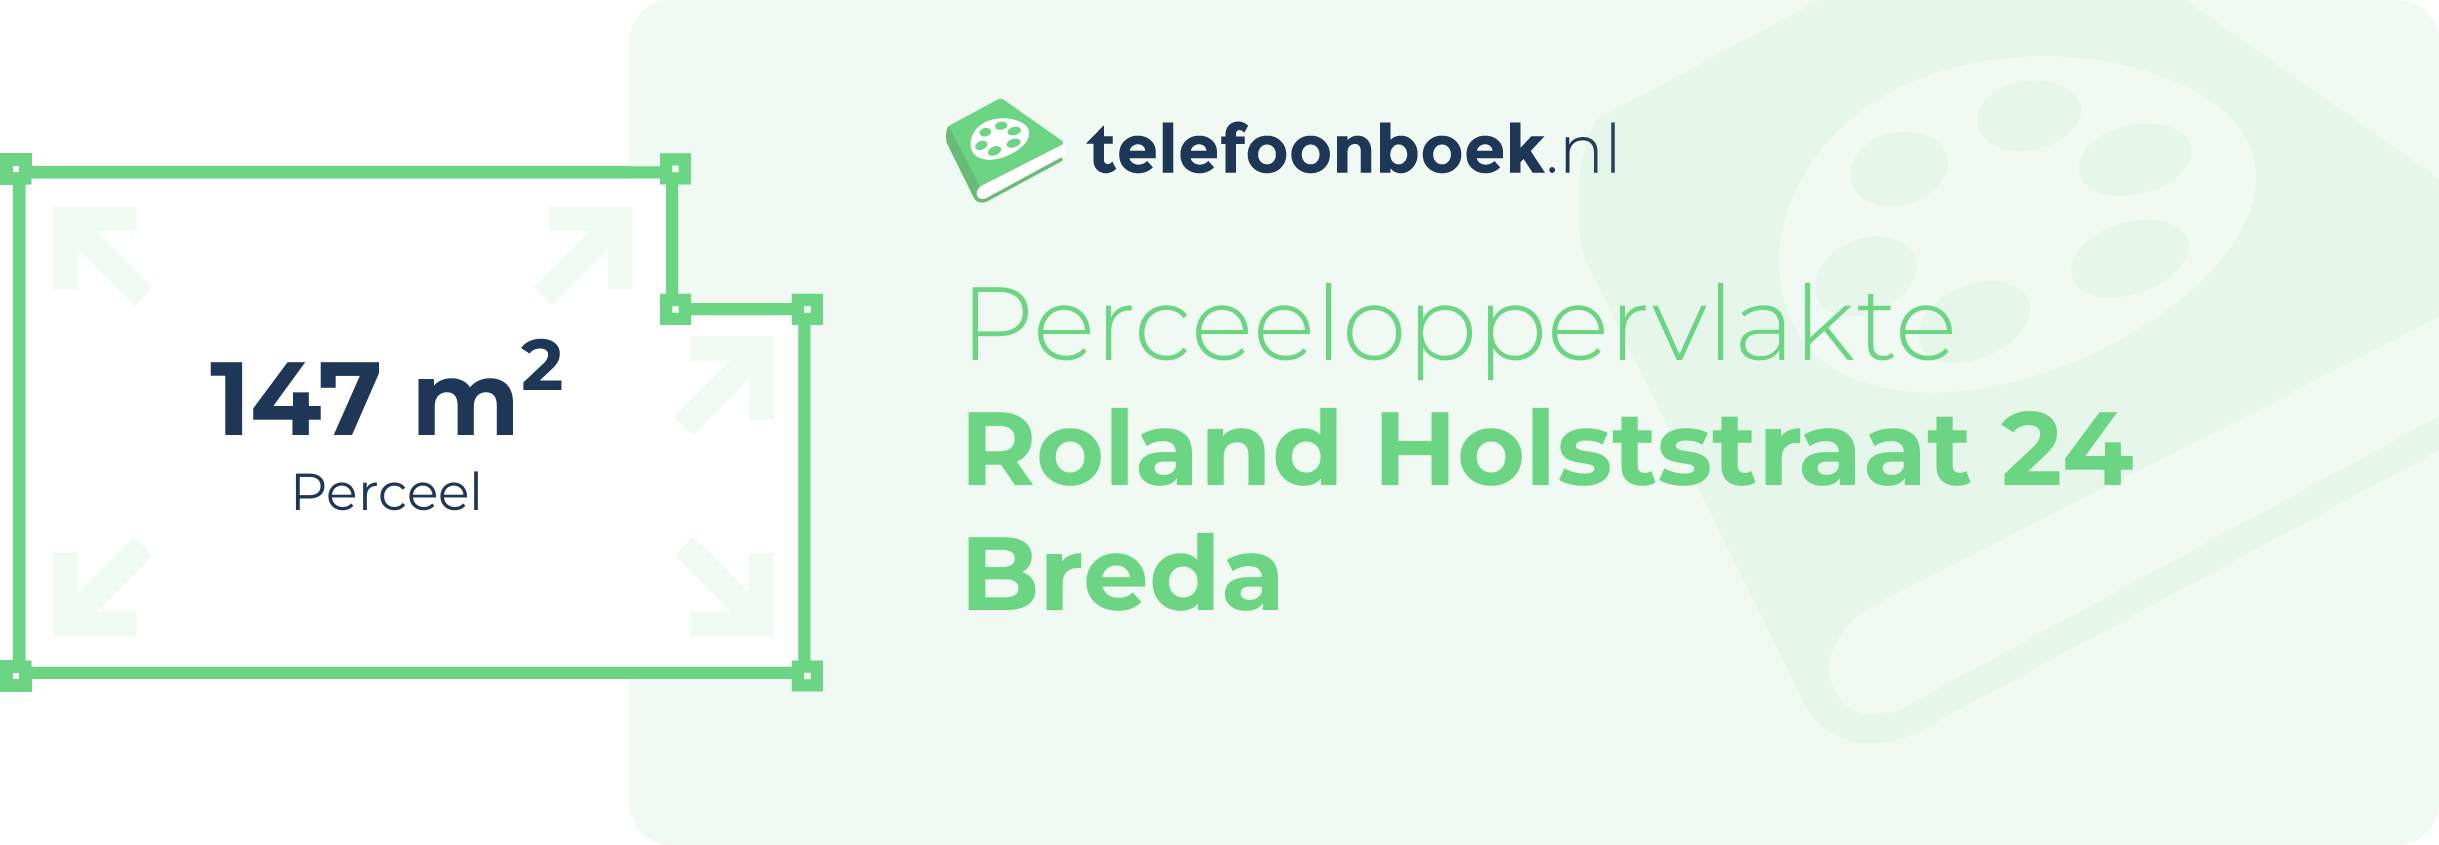 Perceeloppervlakte Roland Holststraat 24 Breda